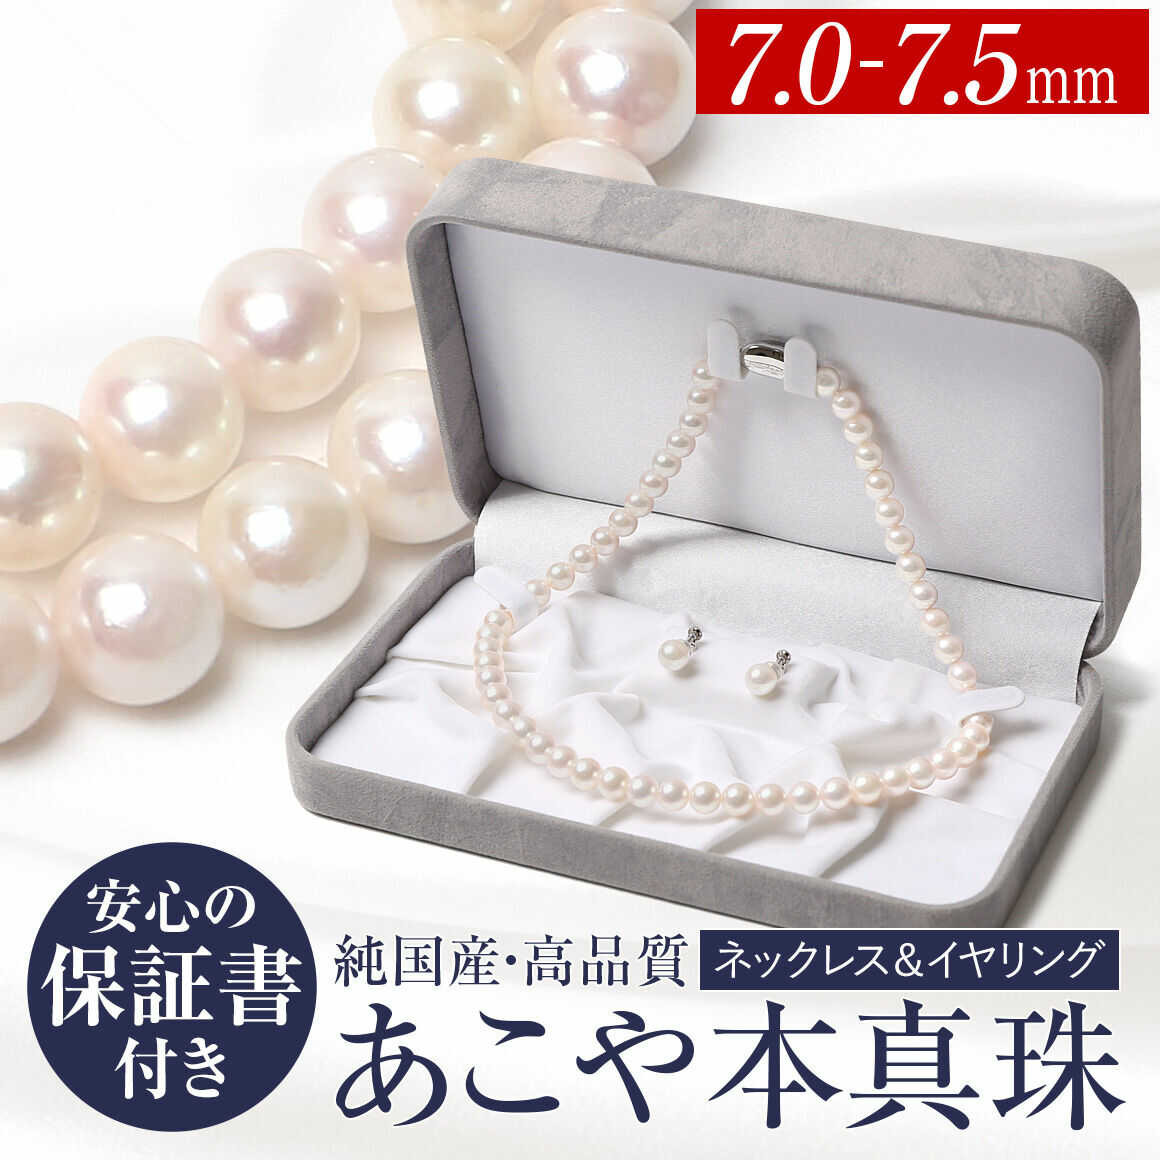 【ふるさと納税】 あこや真珠 7.0-7.5mm ネックレス